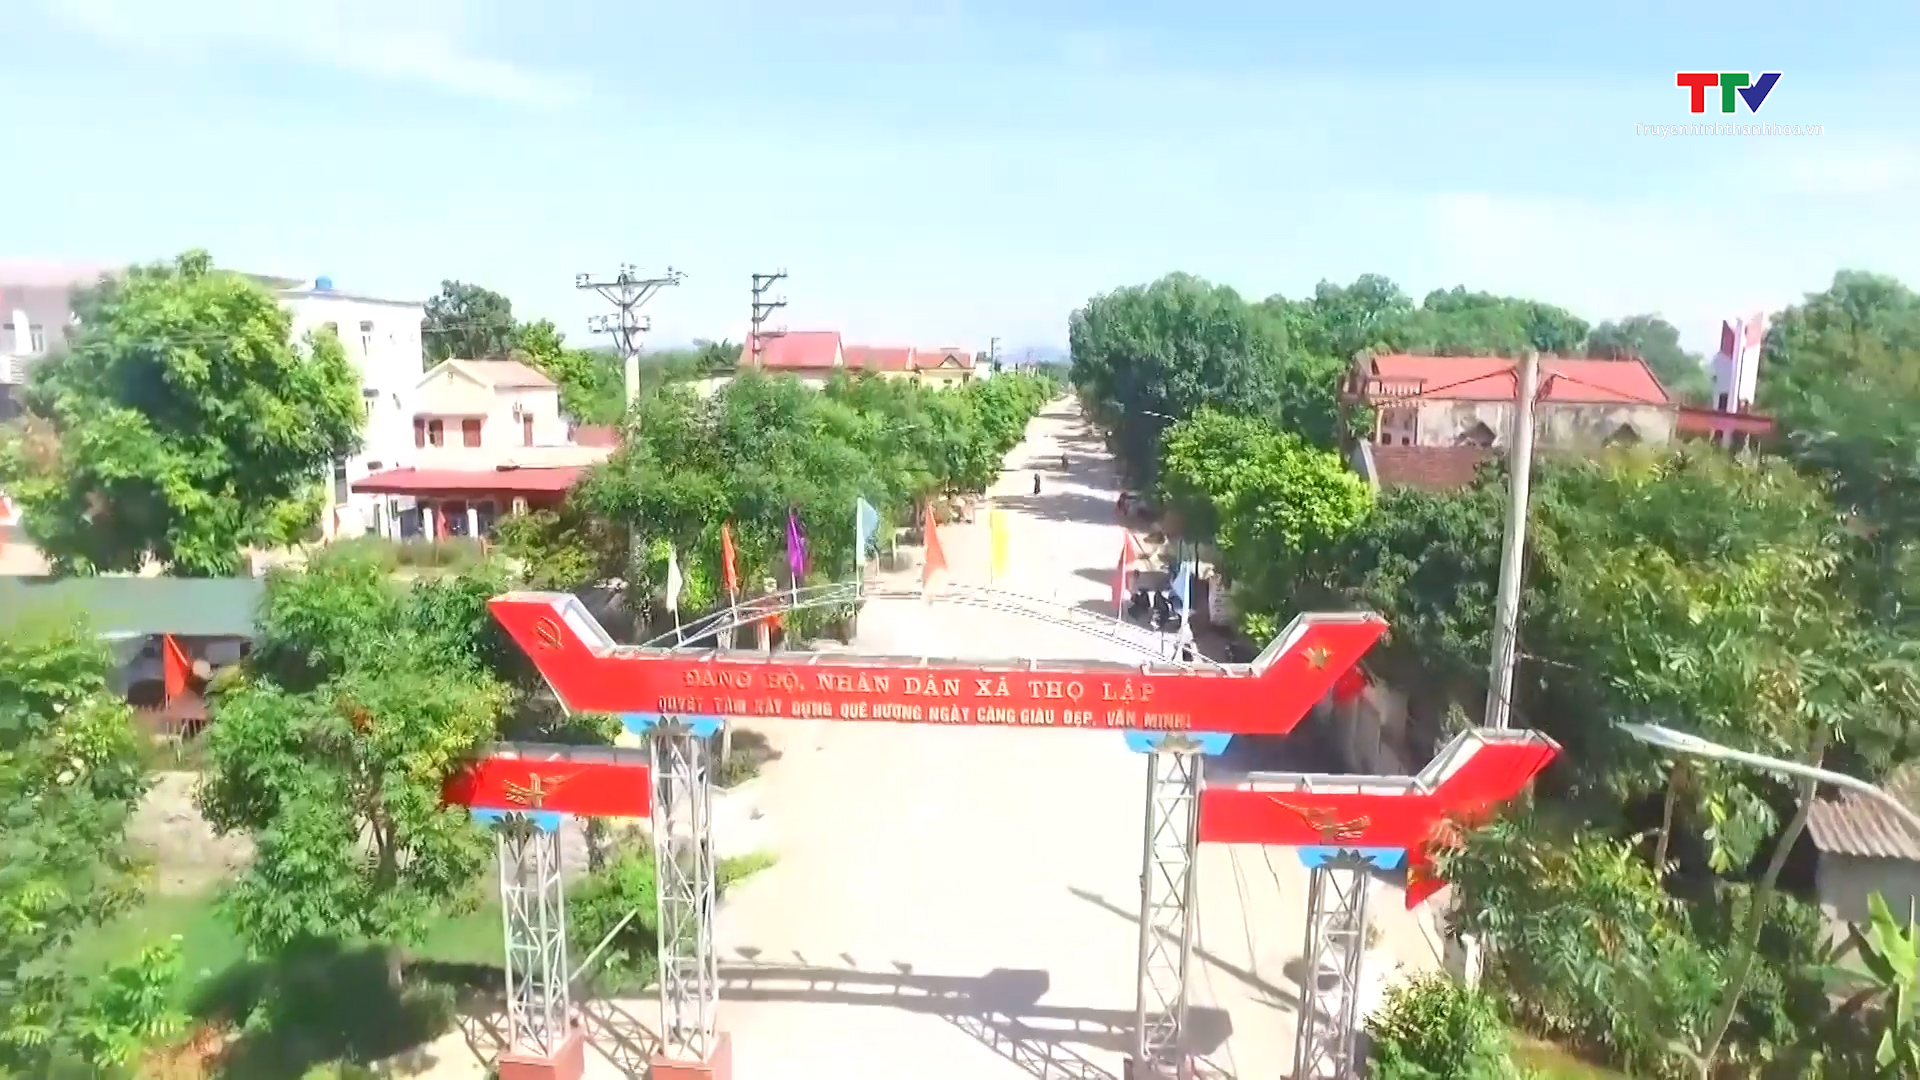 Đổi mới ở vùng quê nơi thành lập Đảng bộ tỉnh Thanh Hóa - Ảnh 4.